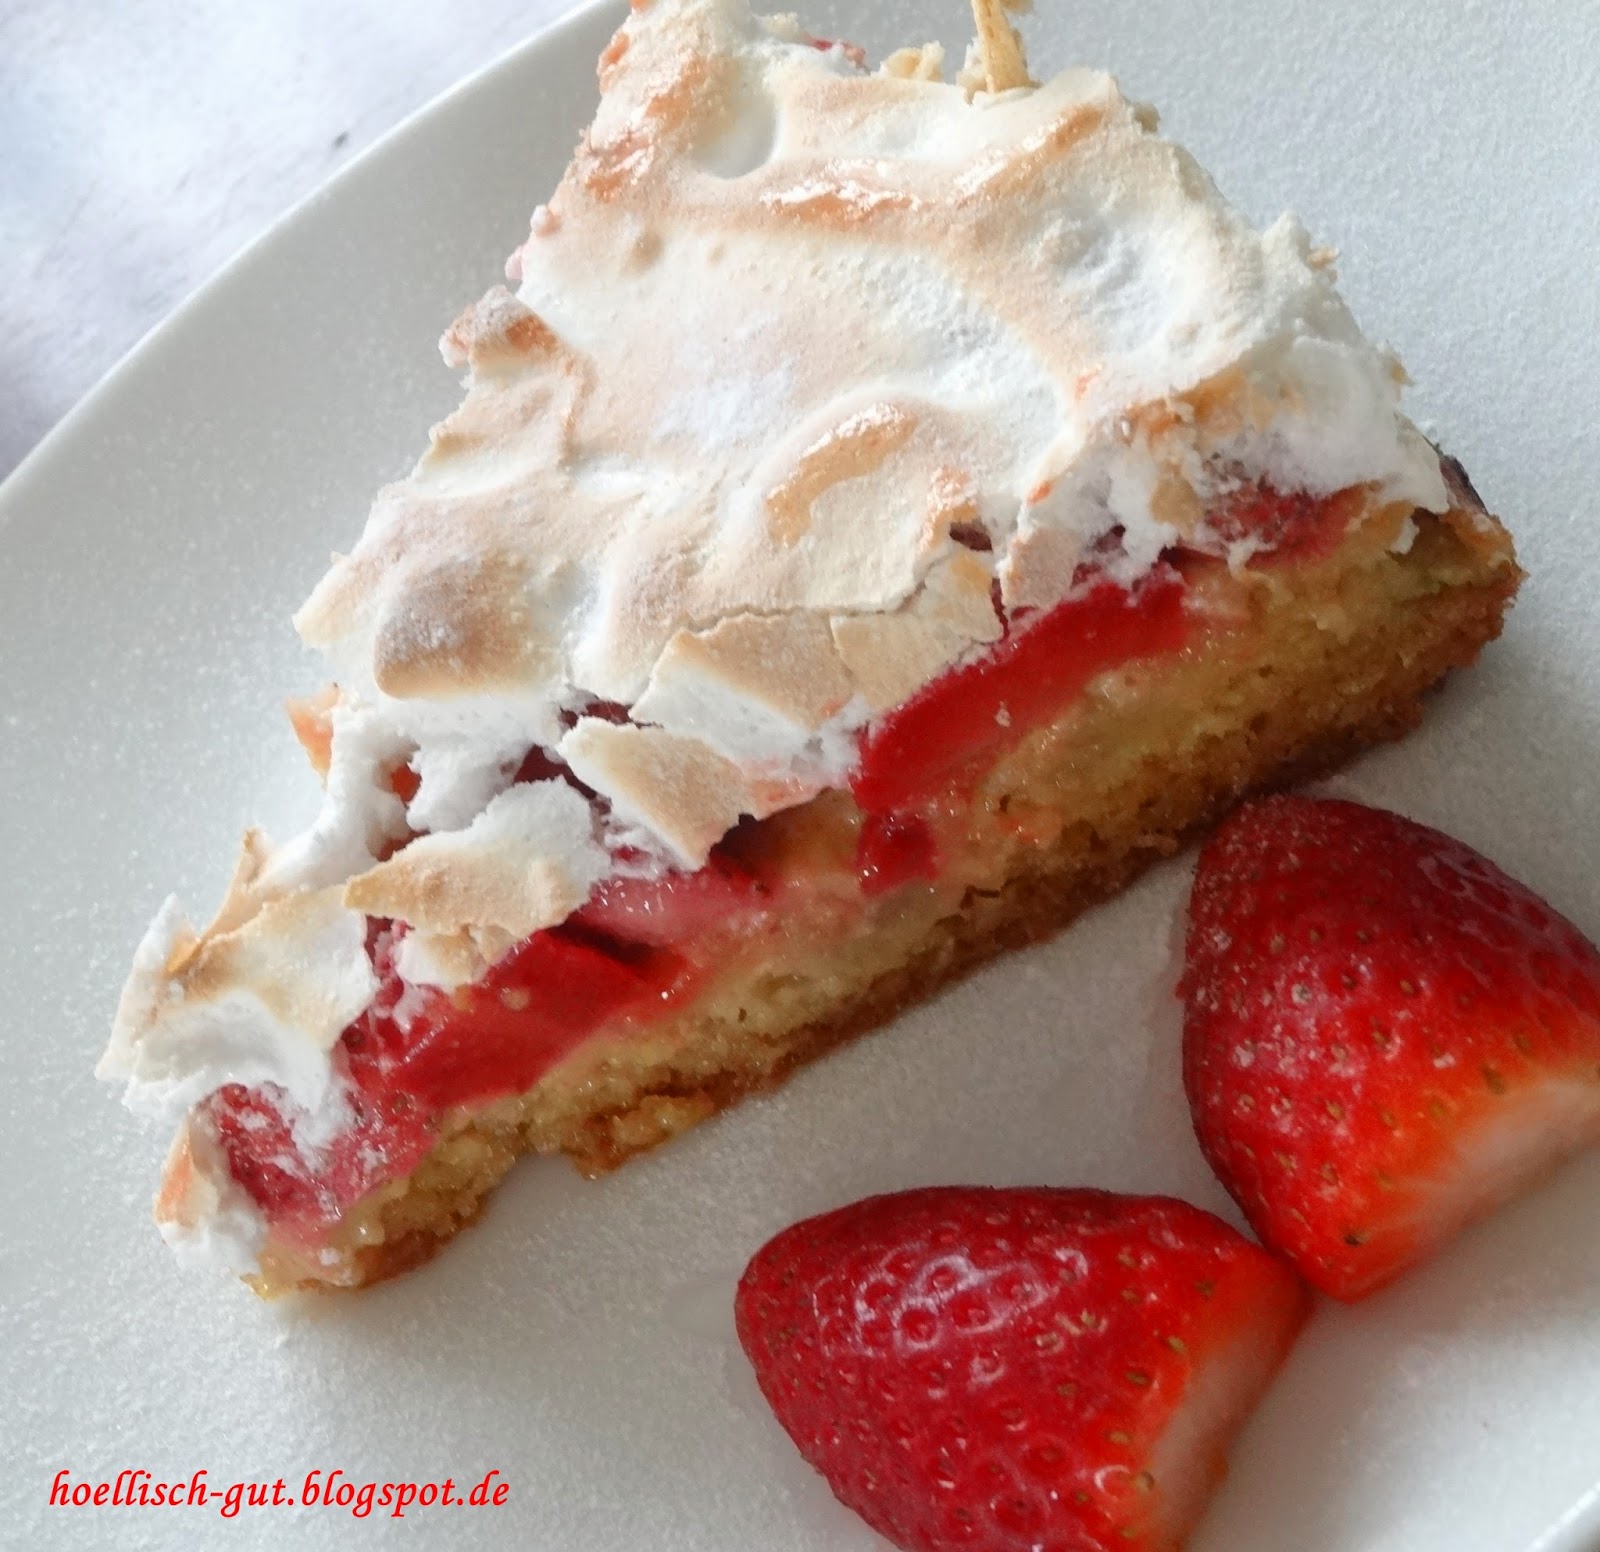 Erdbeer Rhabarber Baisertorte Kuchen — Rezepte Suchen